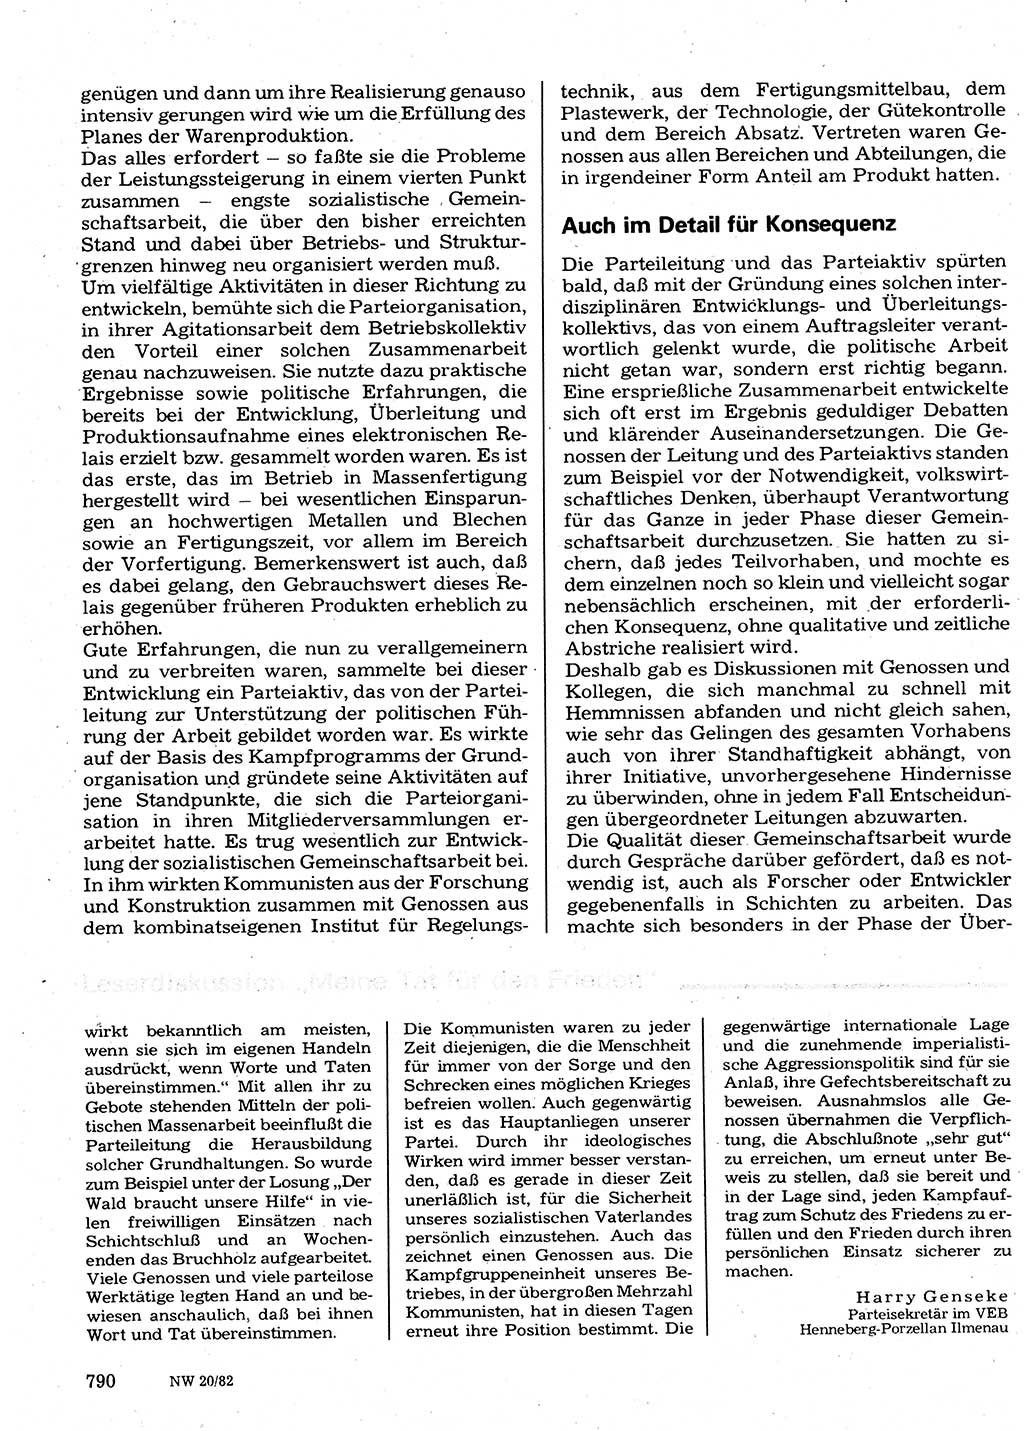 Neuer Weg (NW), Organ des Zentralkomitees (ZK) der SED (Sozialistische Einheitspartei Deutschlands) für Fragen des Parteilebens, 37. Jahrgang [Deutsche Demokratische Republik (DDR)] 1982, Seite 790 (NW ZK SED DDR 1982, S. 790)